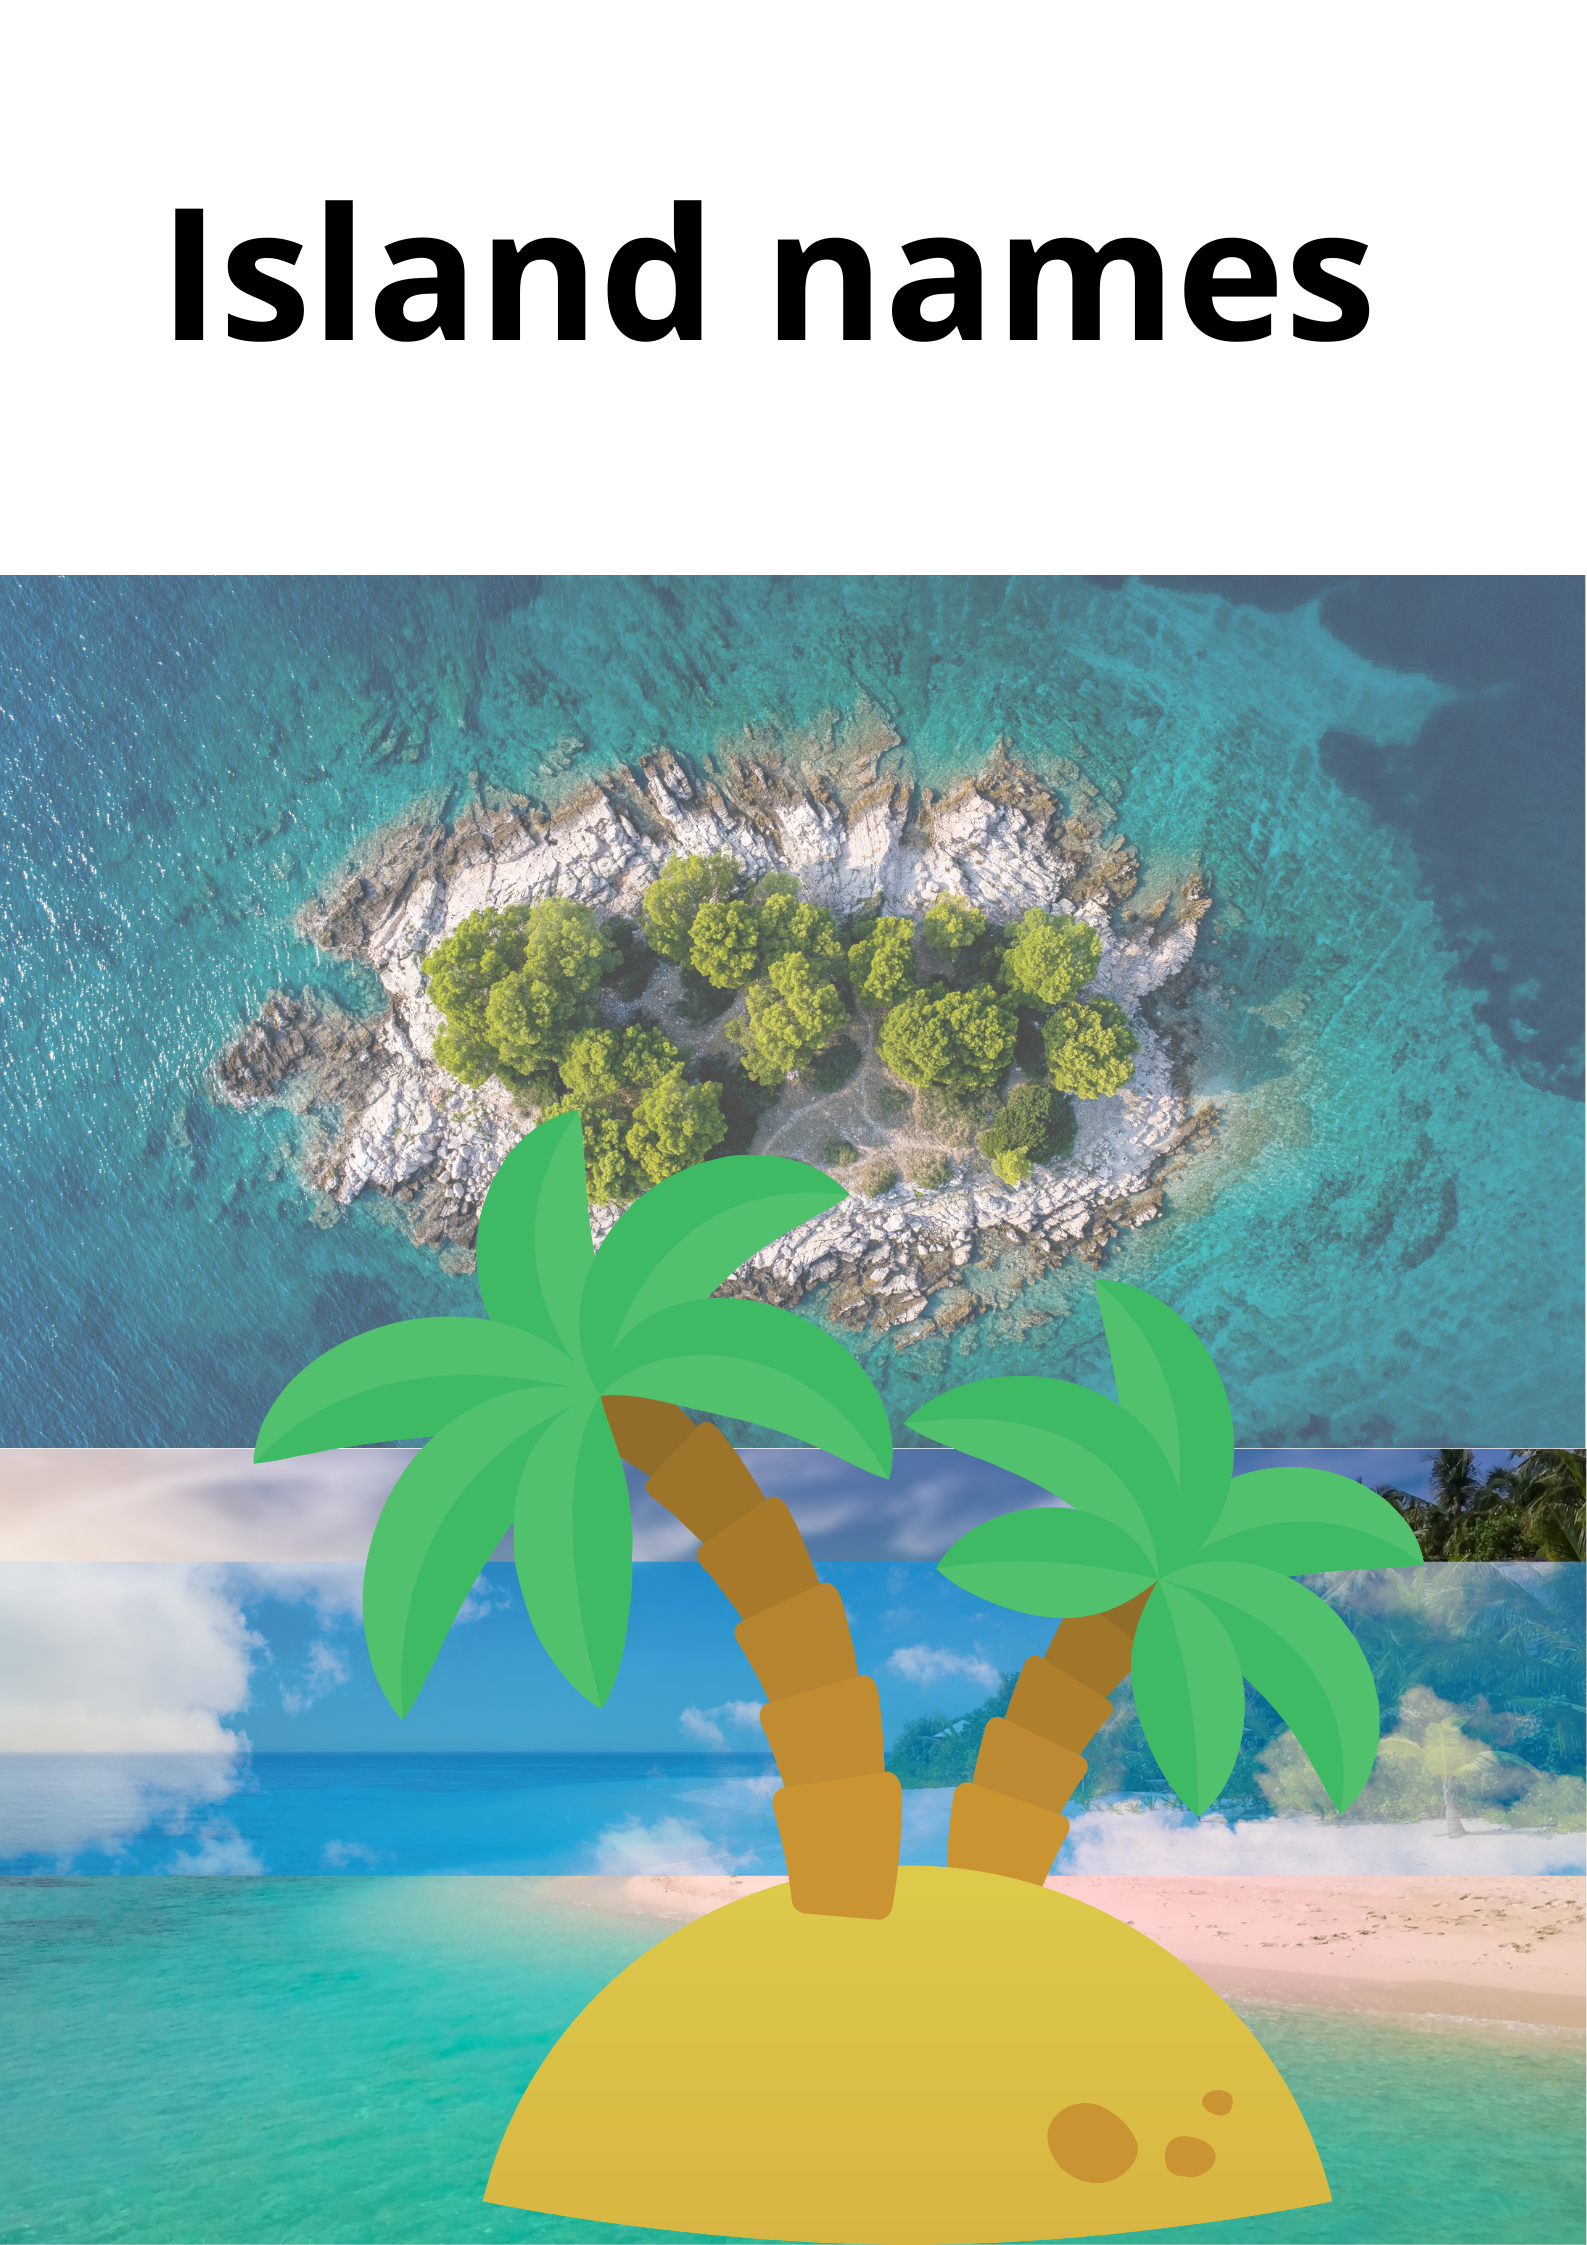 द्वीपों के नाम : Island name in hindi and English